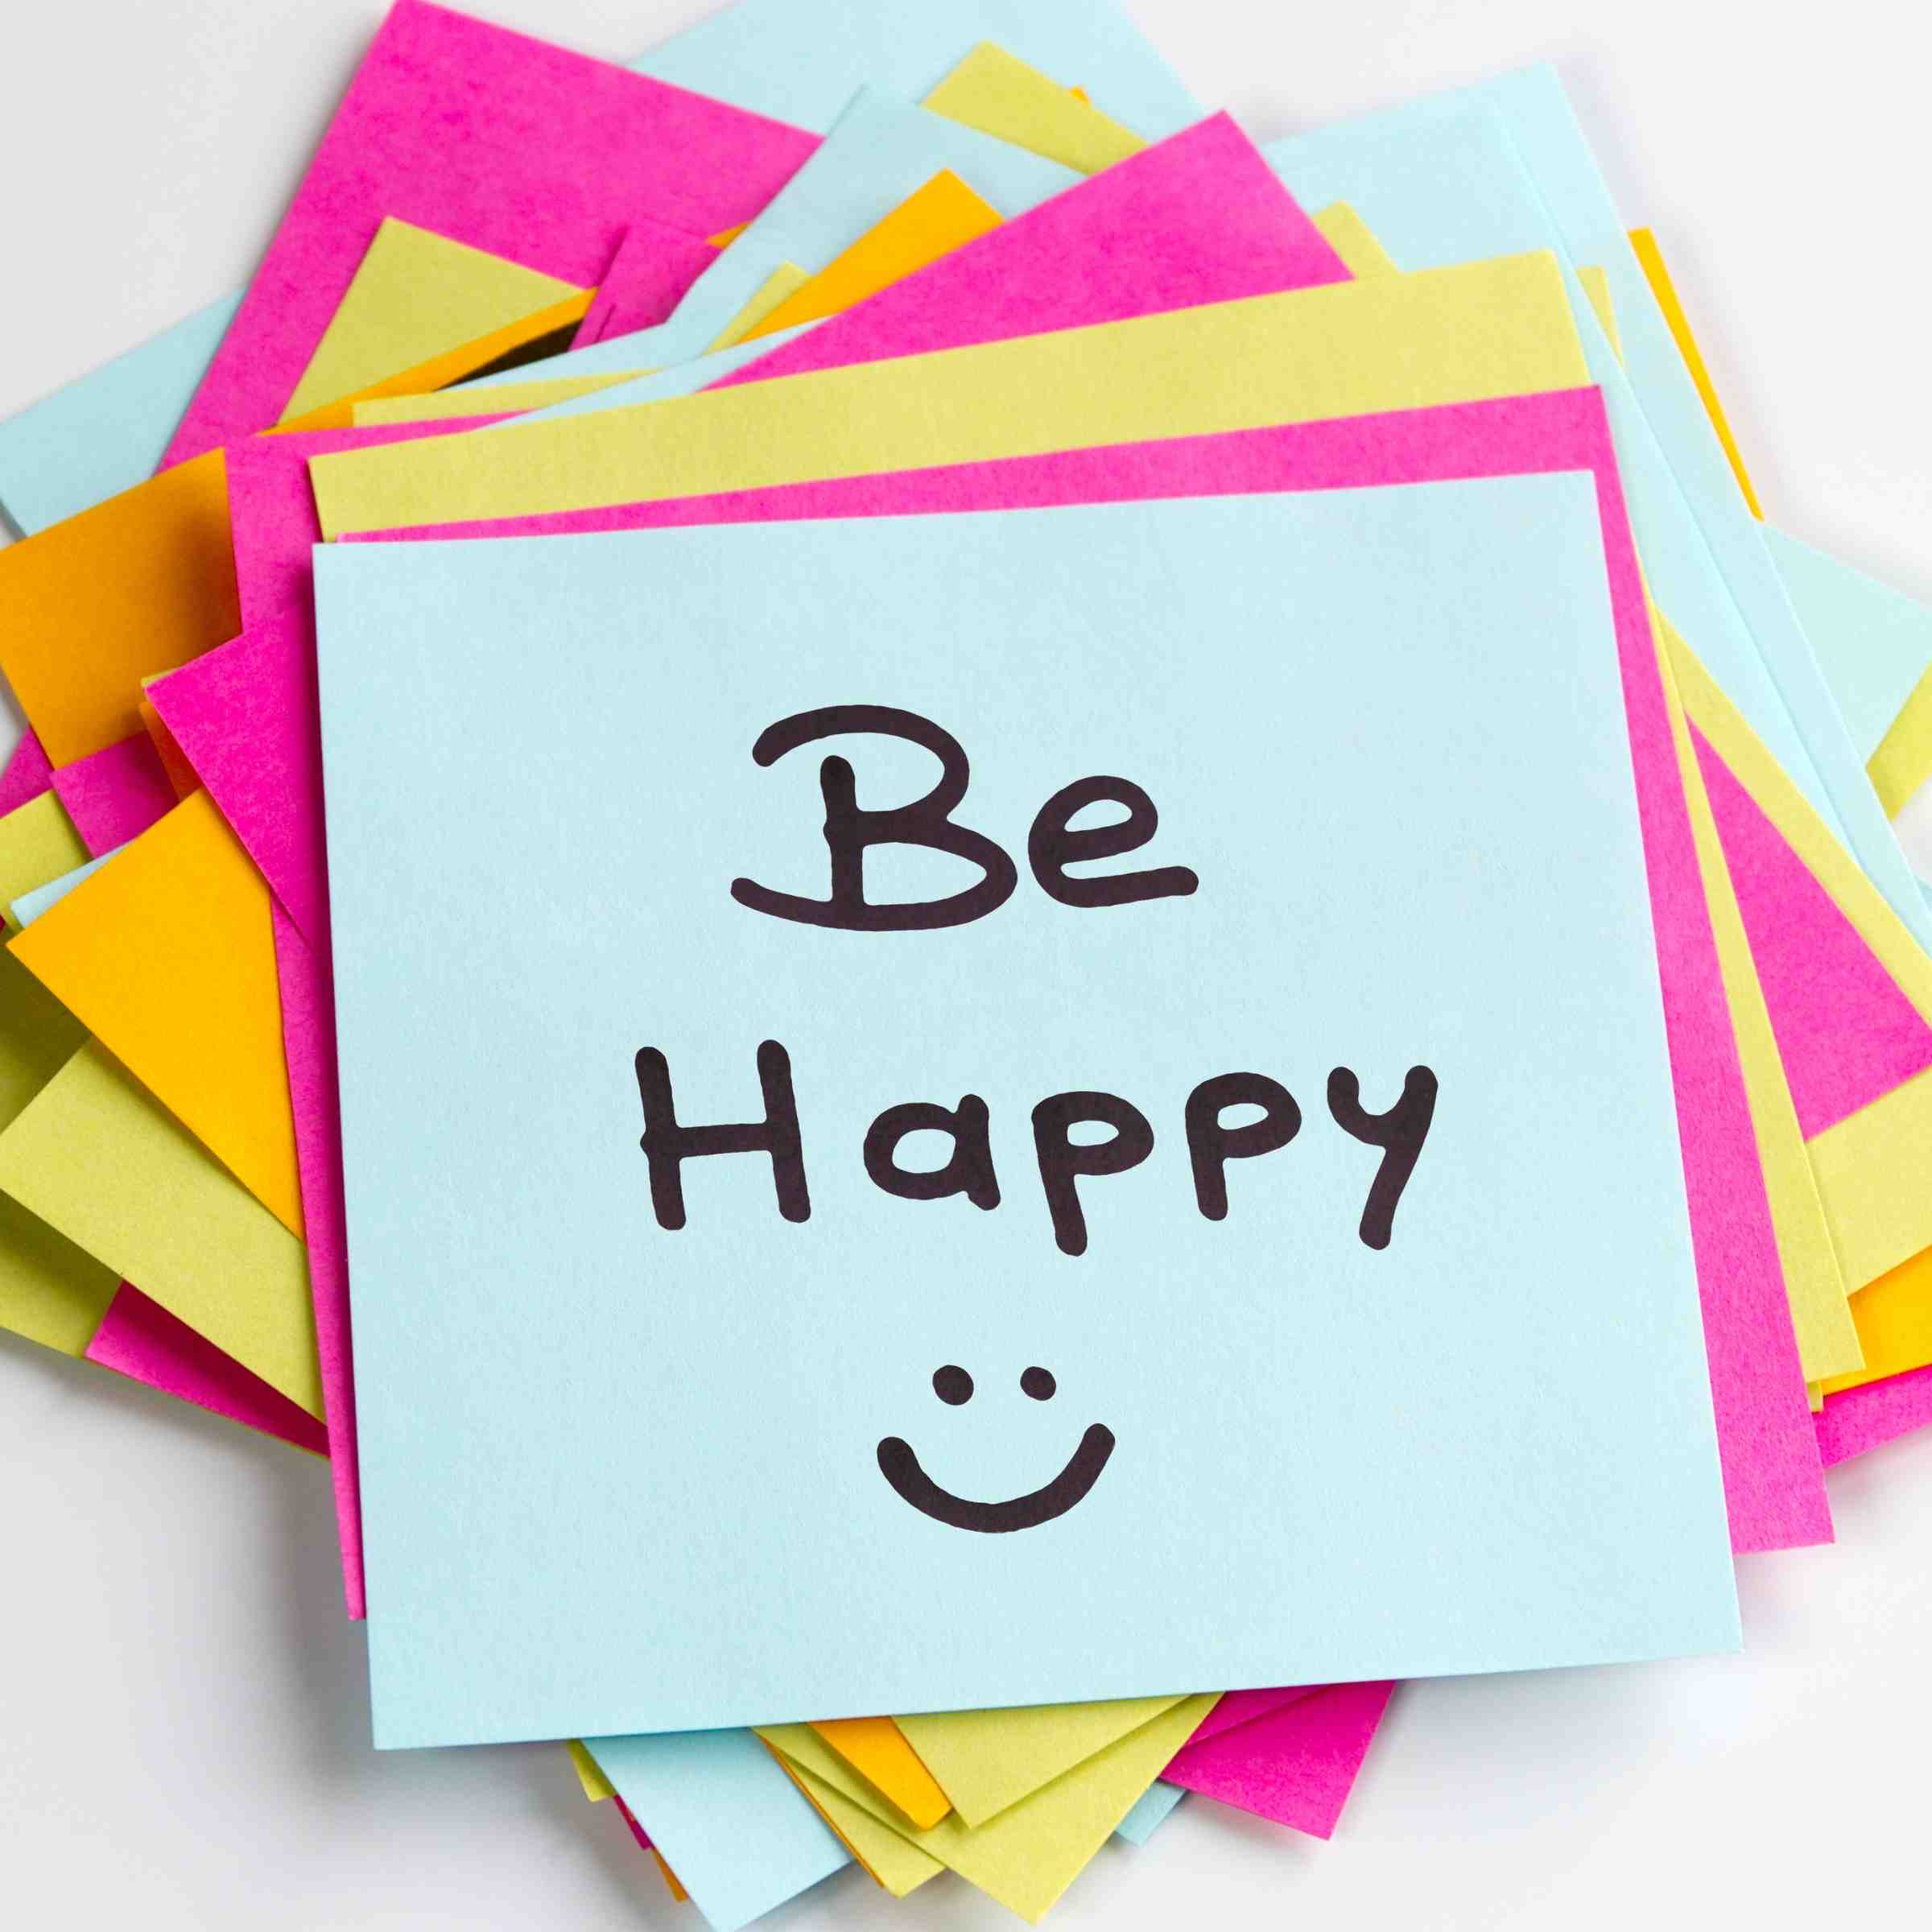 Ben jij gelukkig op werk? Maak gebruik van de positieve psychologie om op een andere manier naar jouw werkgeluk te kijken.